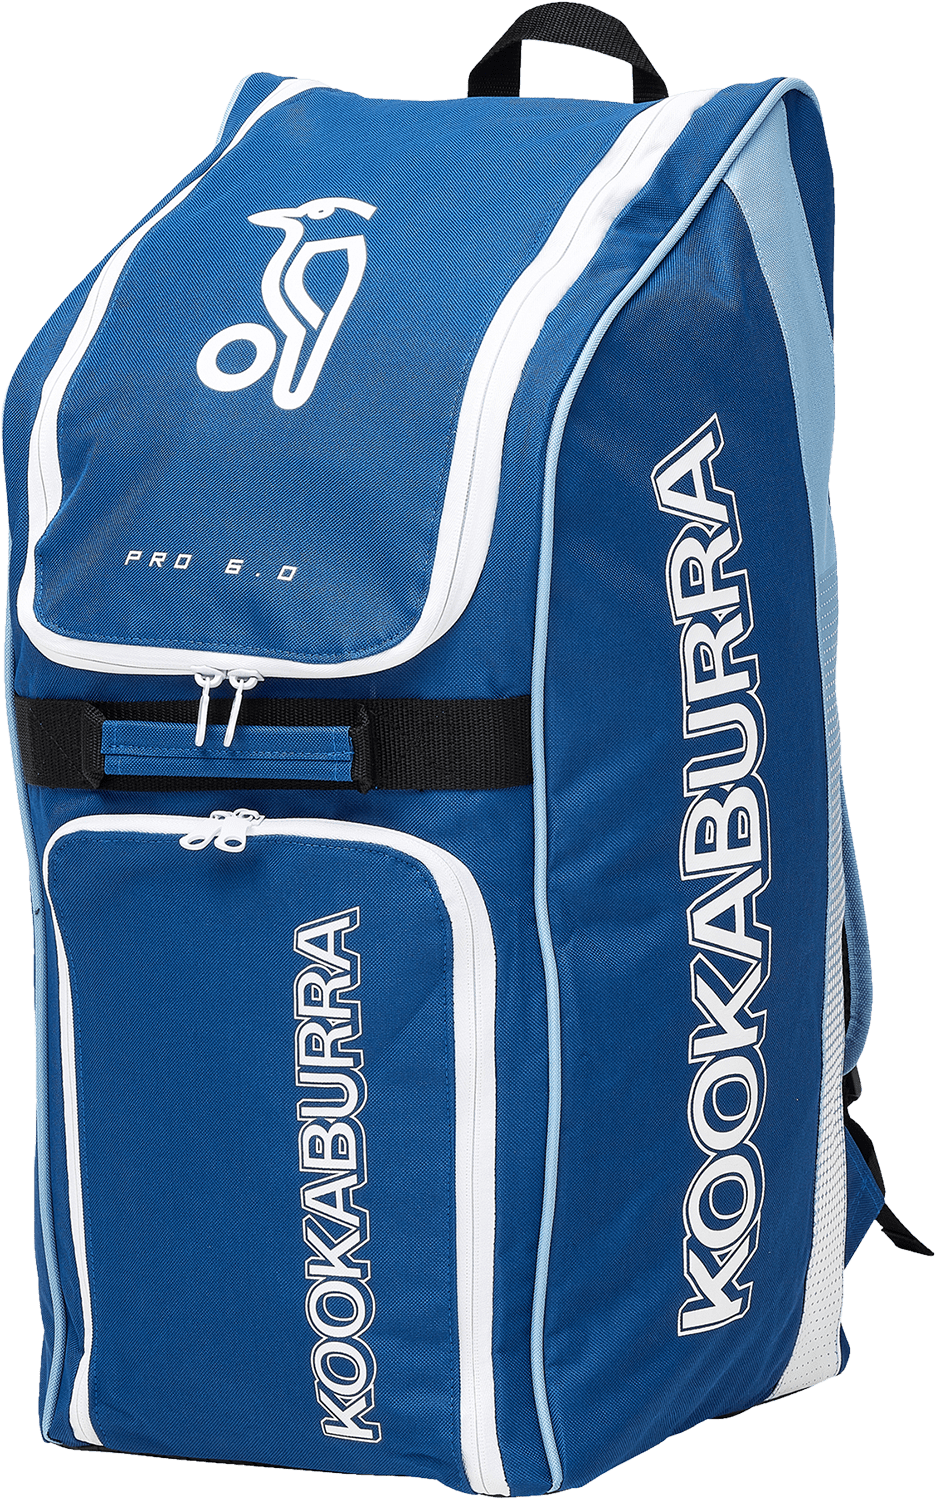 Kookaburra Cricket Bags Blue Kookaburra Pro 6.0 Duffle Cricket Bag